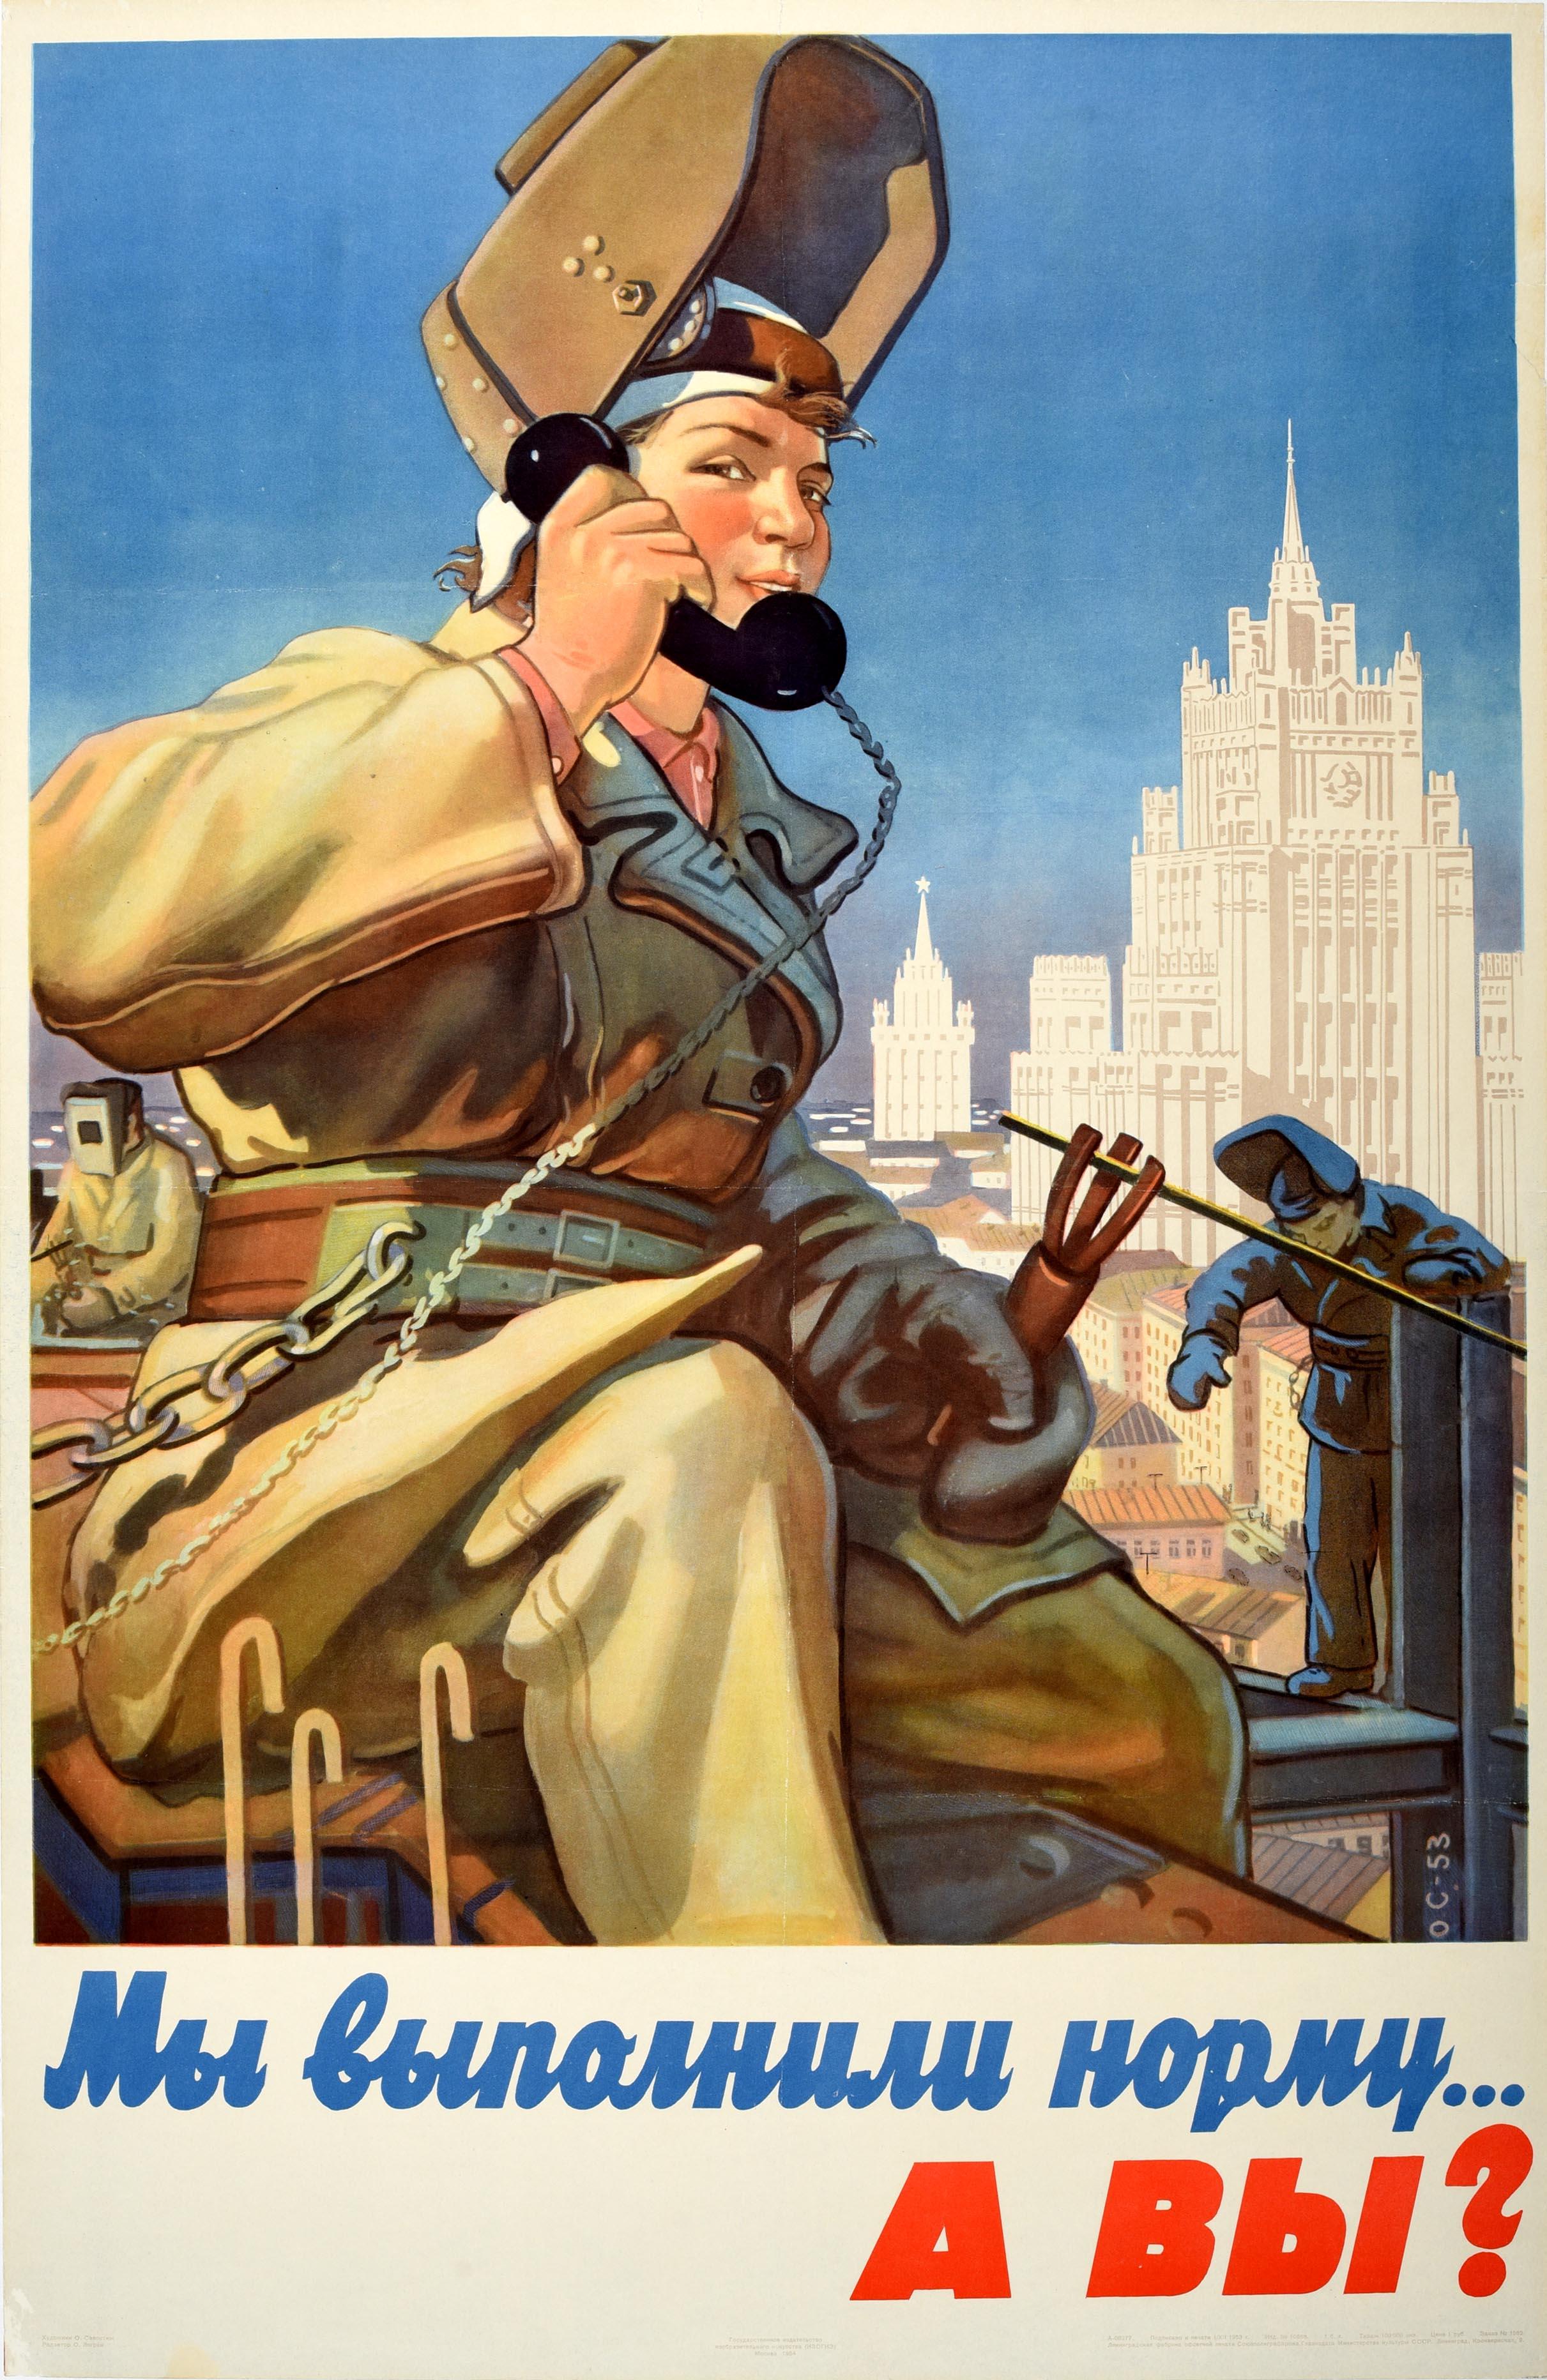 Savostyuk Print - Original Vintage Soviet Poster Work Quota Plan Moscow Construction Welder USSR